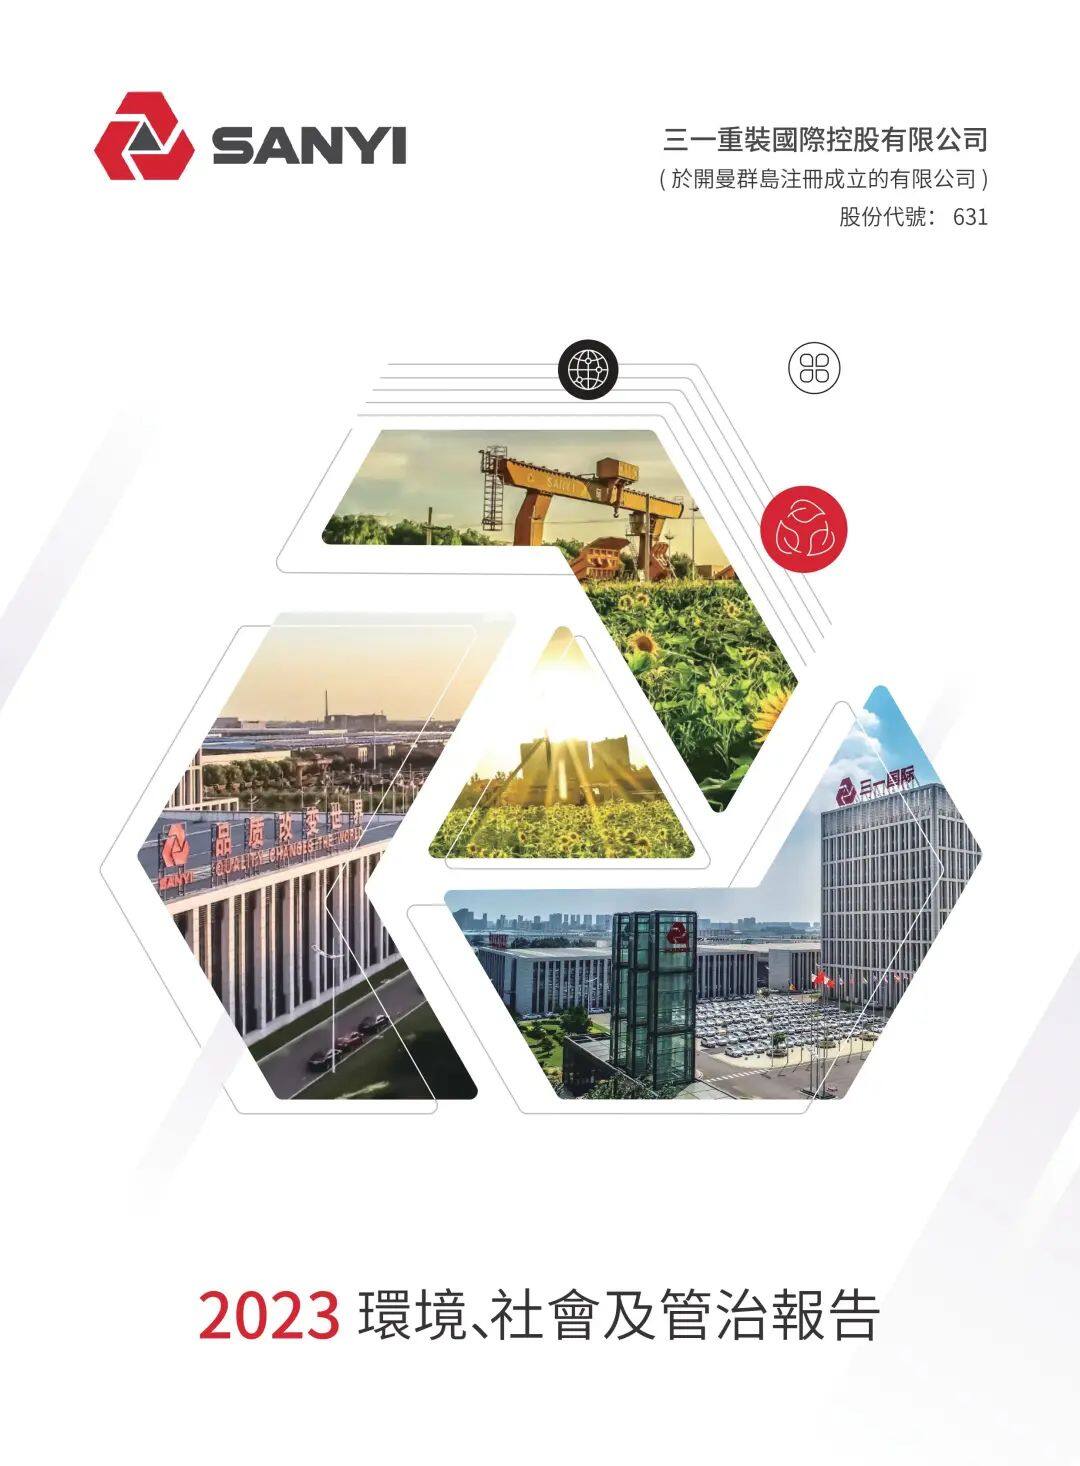 三一国际发布2023年ESG报告